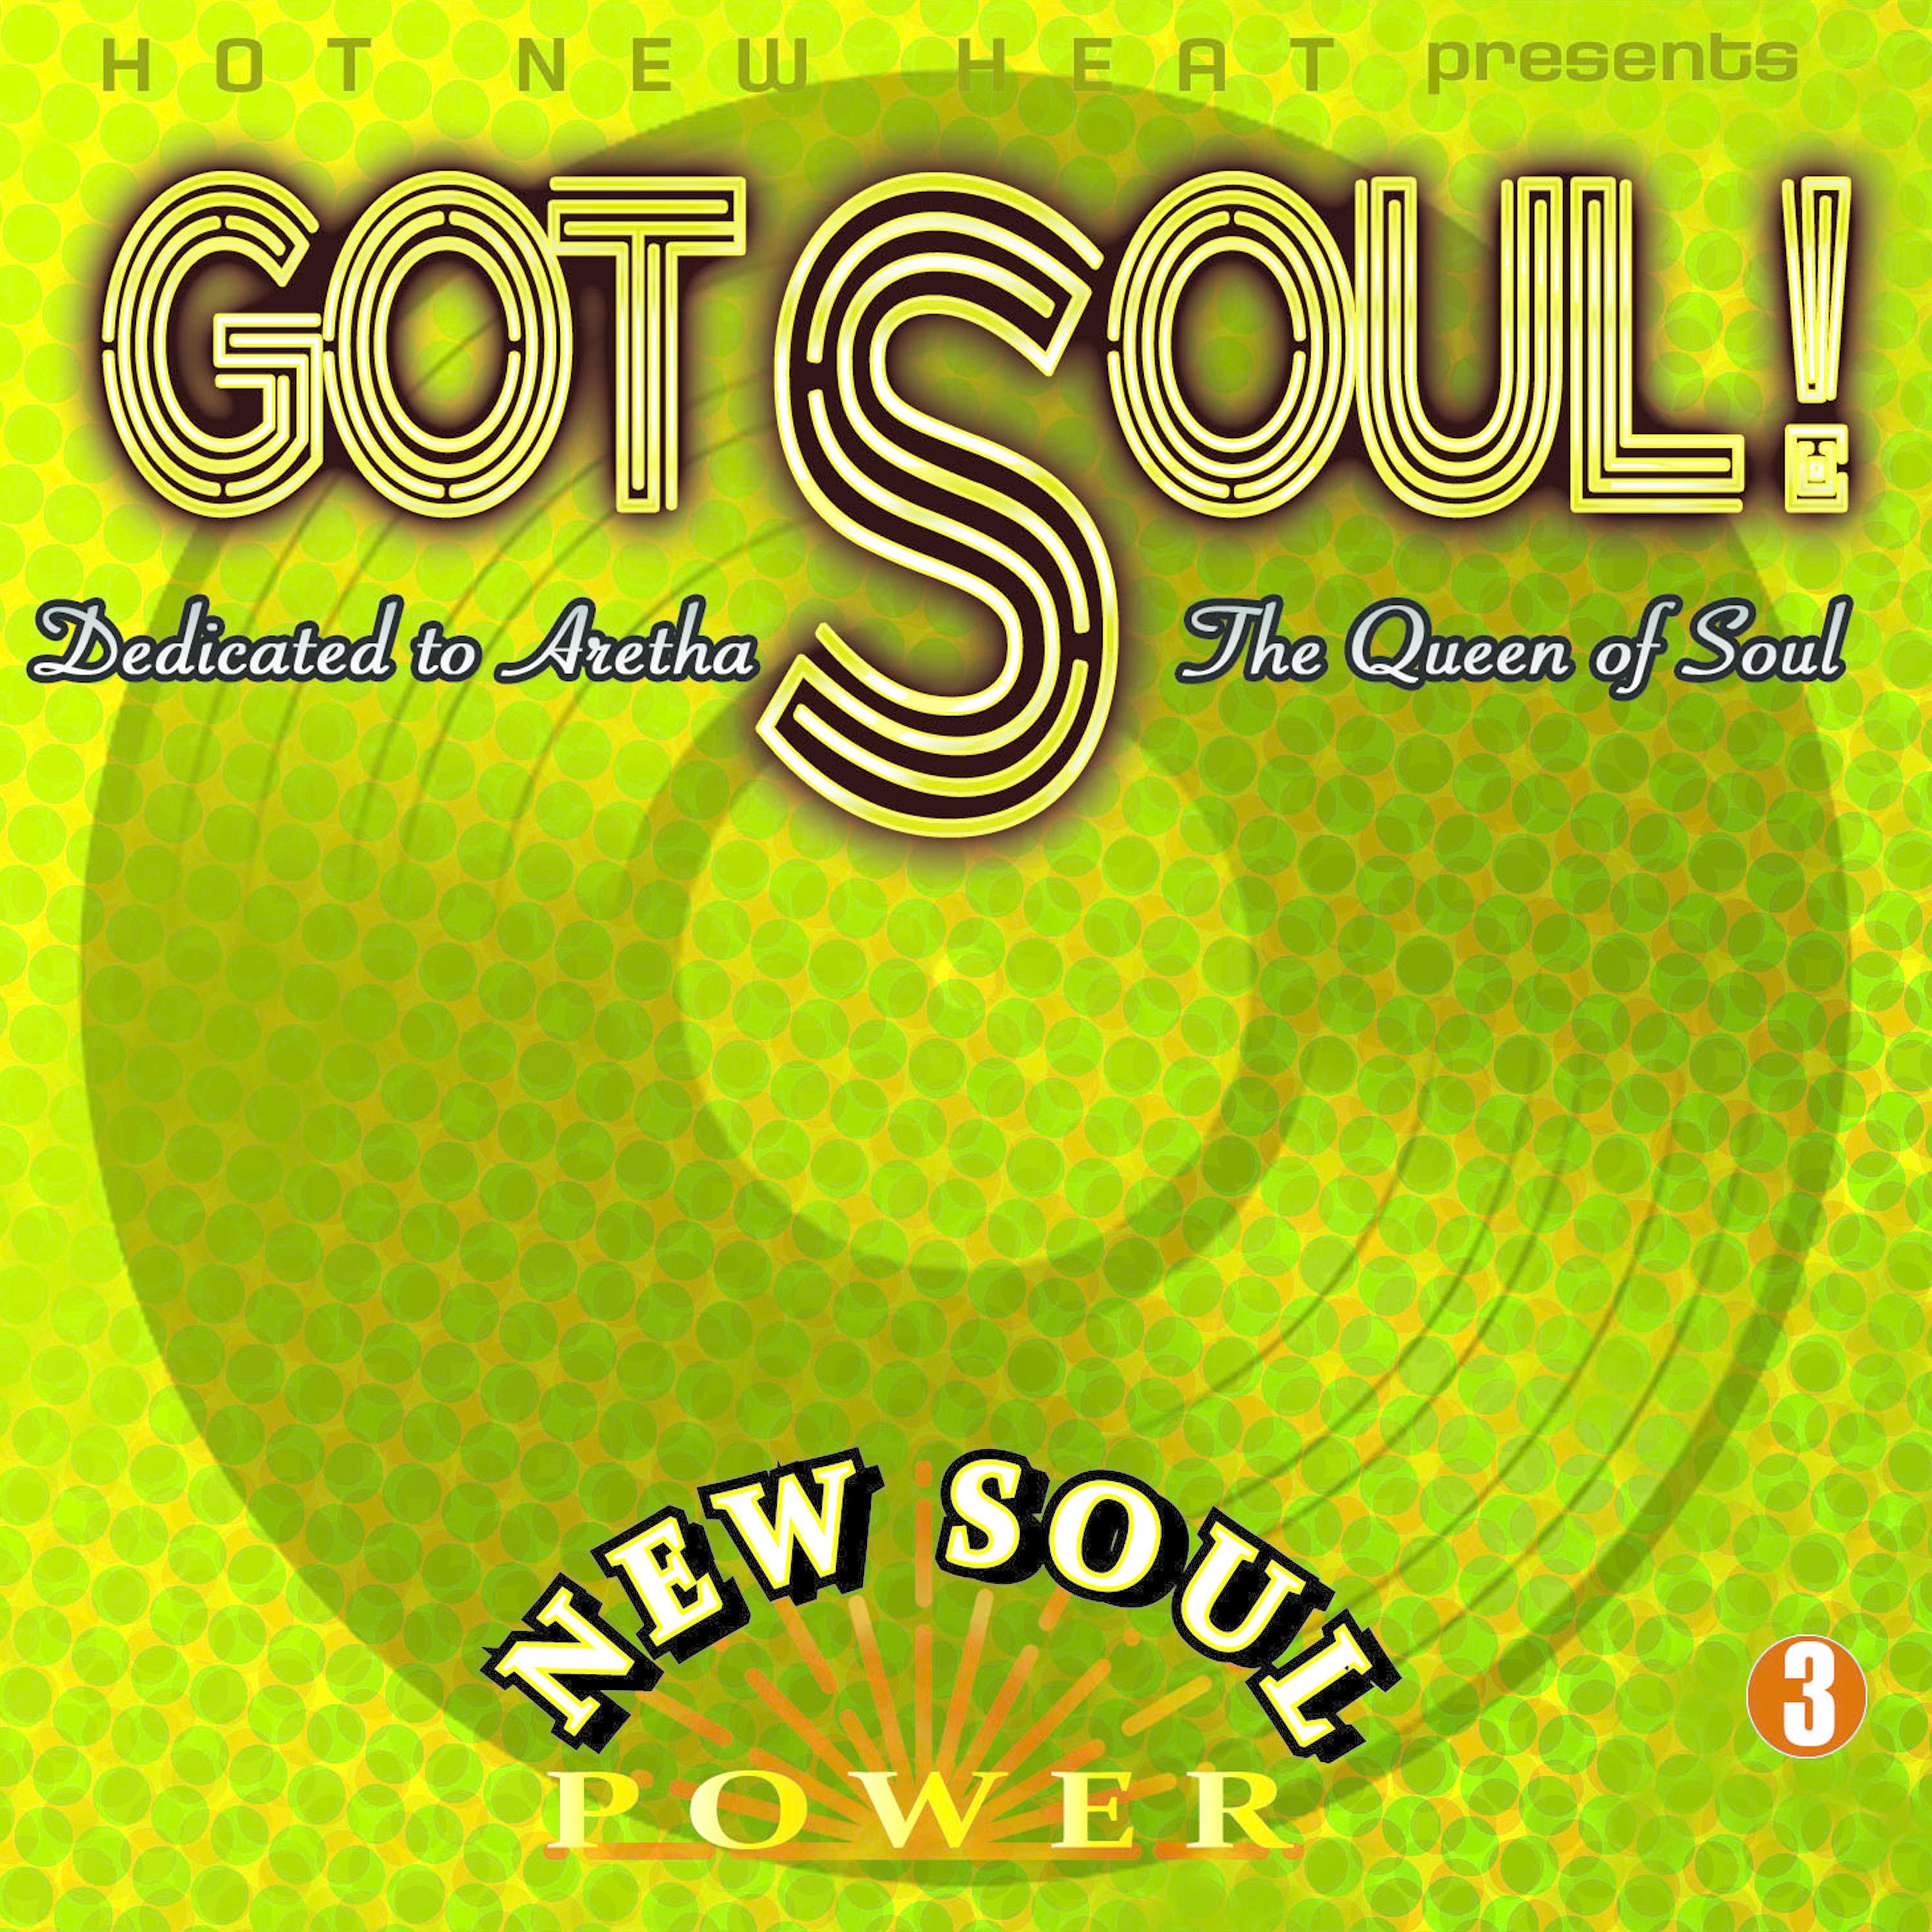 Got Soul! 3 - New Soul Power